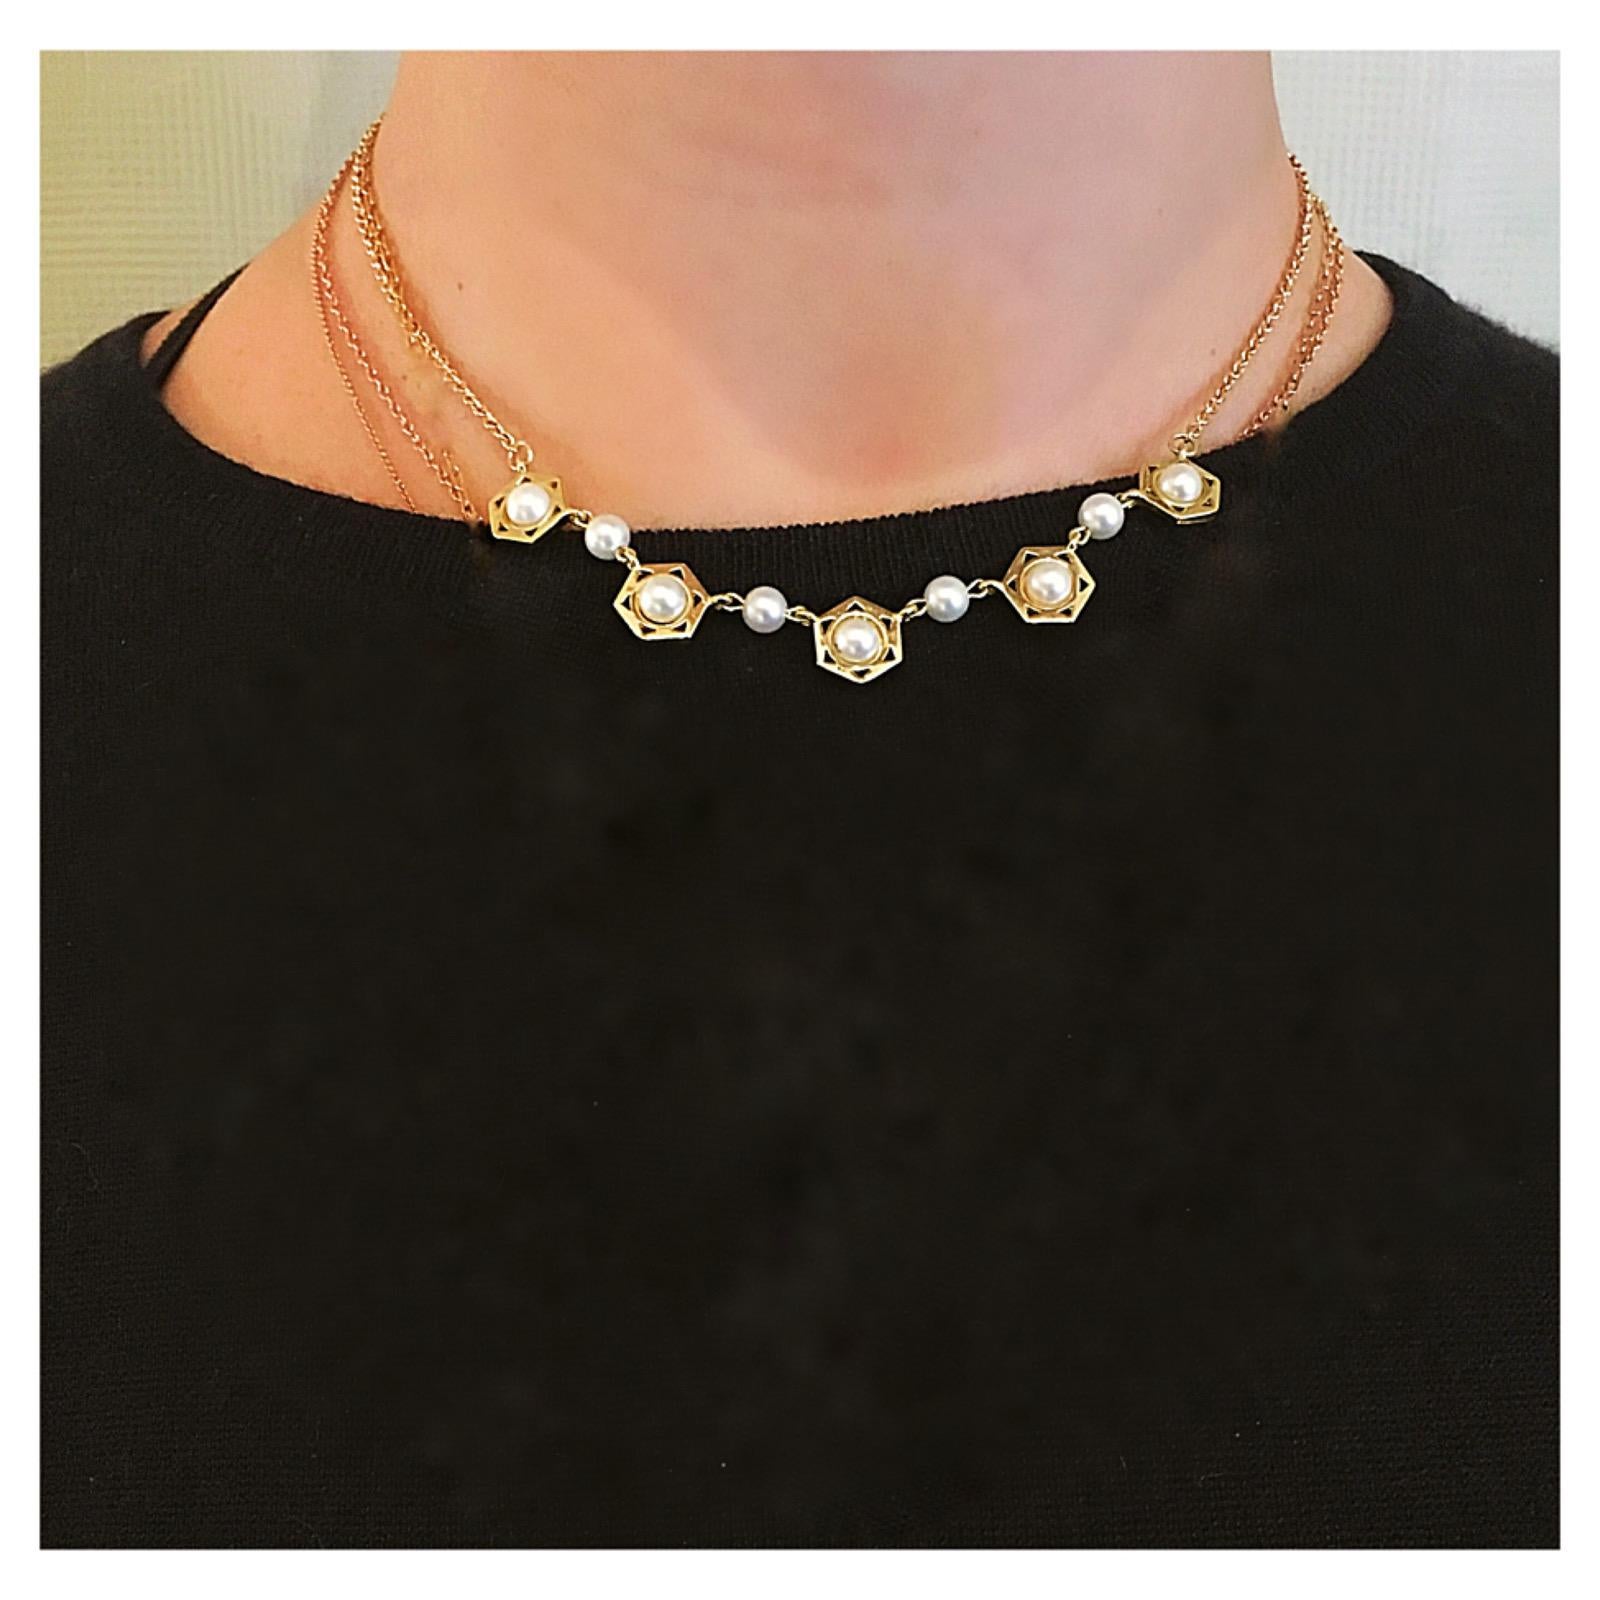 Classique et original, ce collier en perles et or 18 carats est une nouvelle façon d'intégrer les perles à votre garde-robe.  Ce design a un aspect moderne et géométrique, avec des motifs hexagonaux entourant des perles blanches.  La chaîne de 18k